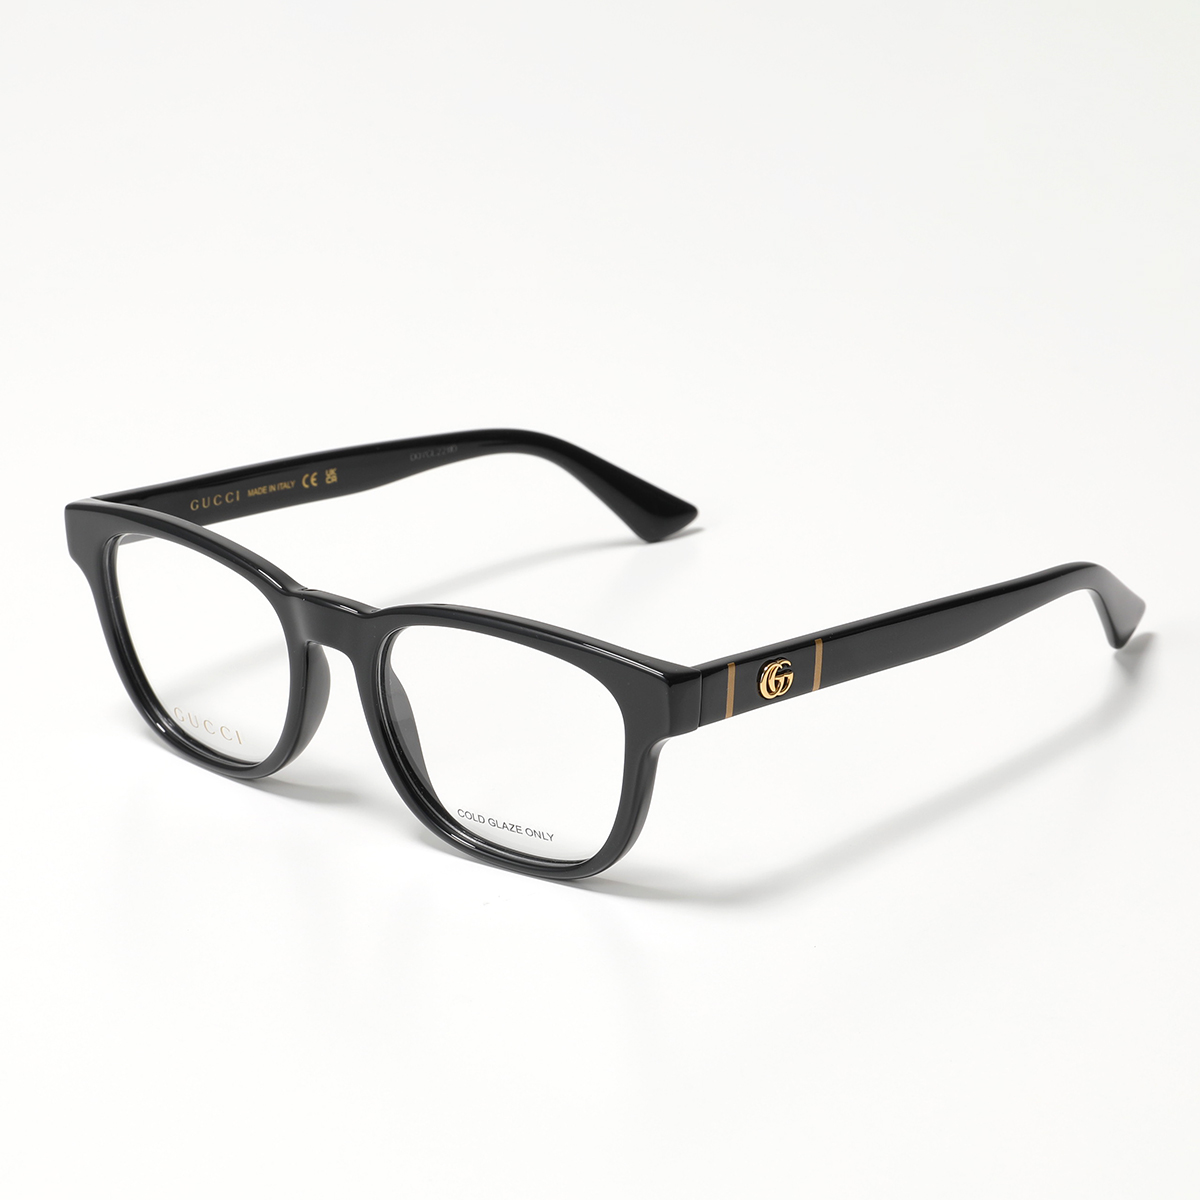 GUCCI グッチ メガネ GG0764O レディース ウェリントン型 眼鏡 フレーム アイウェア めがね GGロゴ 黒縁メガネ  001/BLACKBLACK-TRANSPARENT | インポートセレクト musee